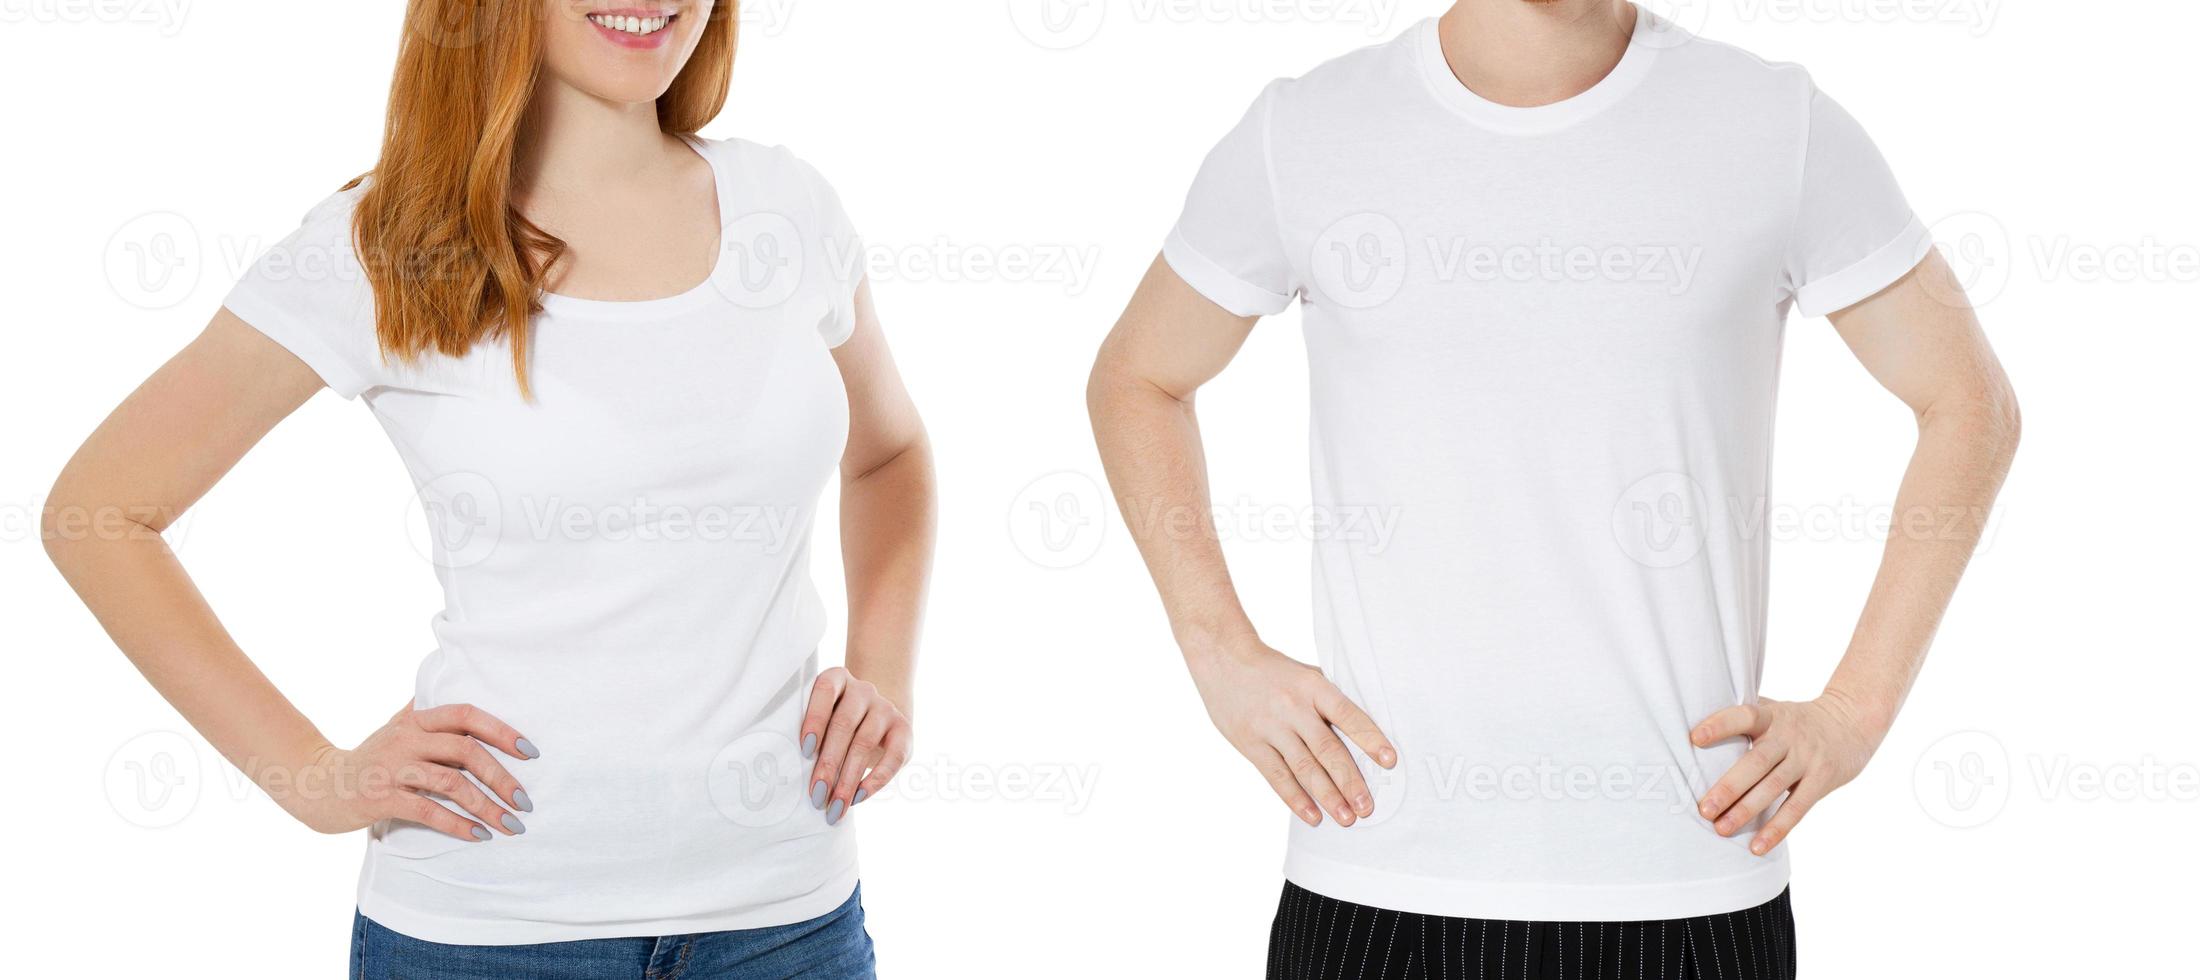 weißes t-shirt auf einem jungen roten haar mann und mädchen isoliertes mockup-t-shirt hautnah foto